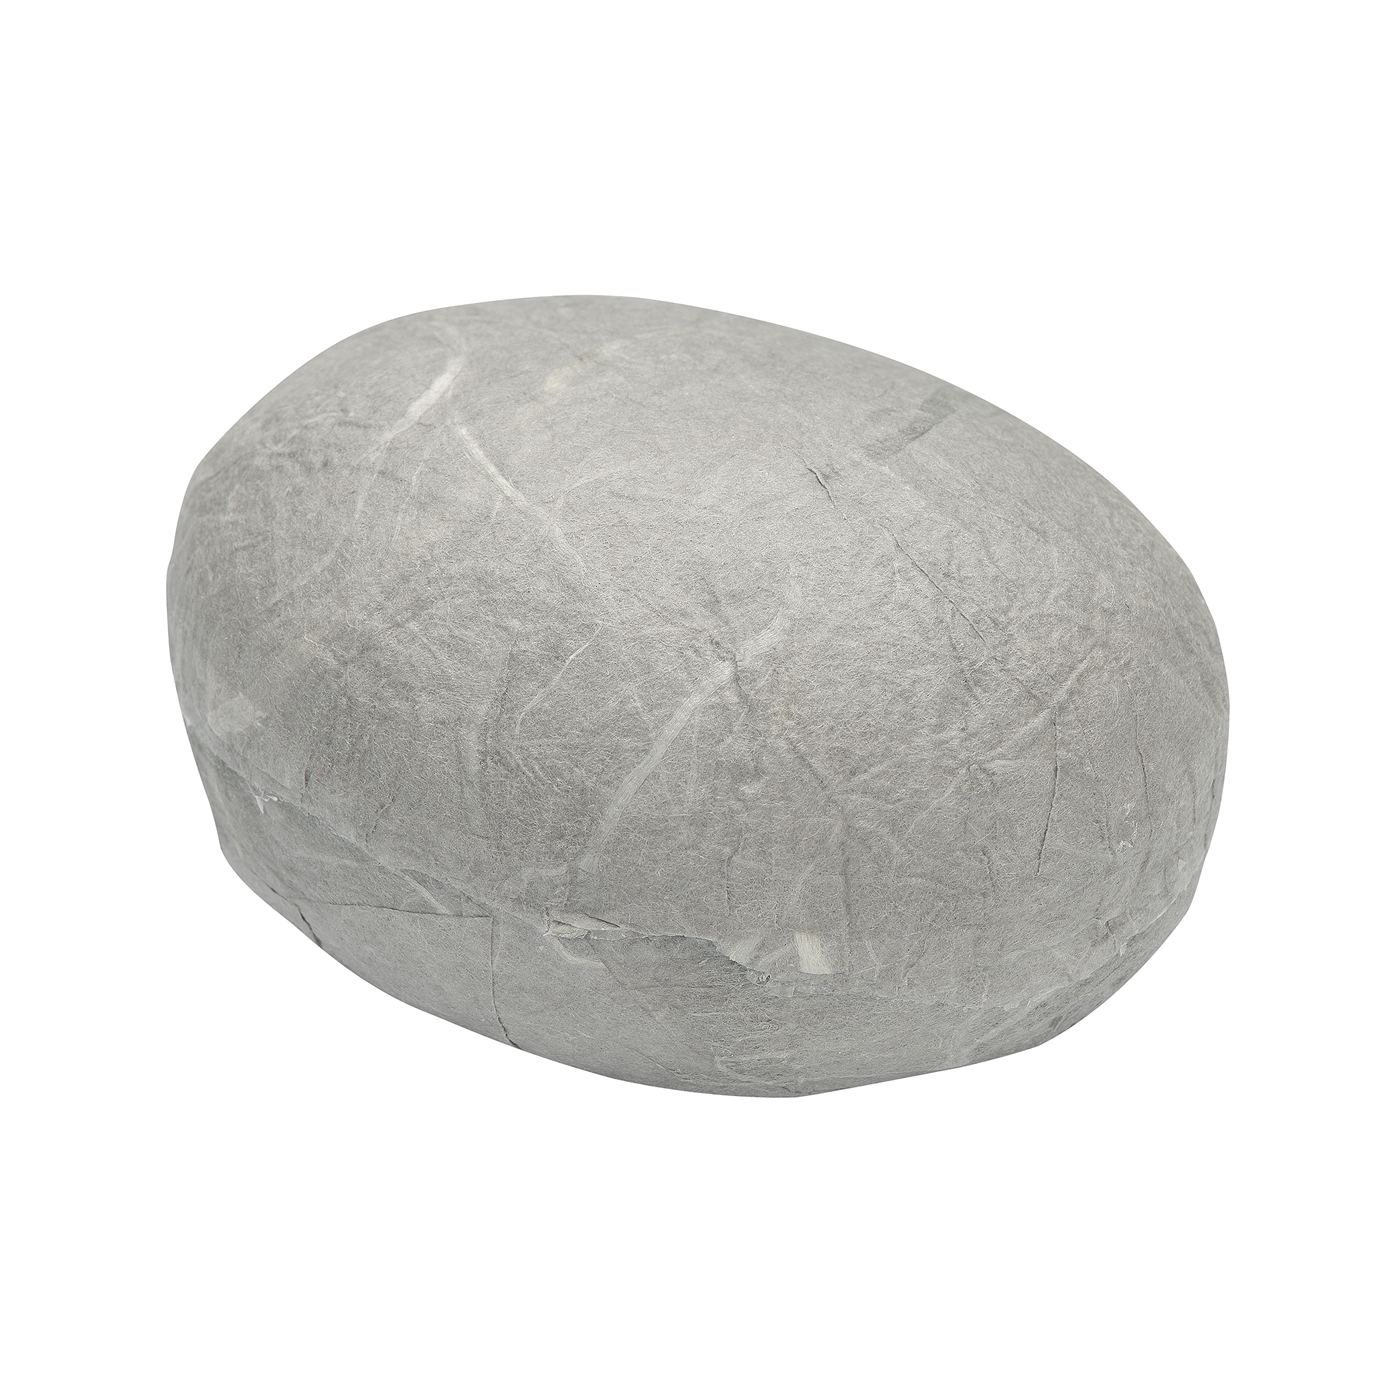 Jewellery Packaging "Stone", Grey, 60 x 50 x 35 mm - 1 piece